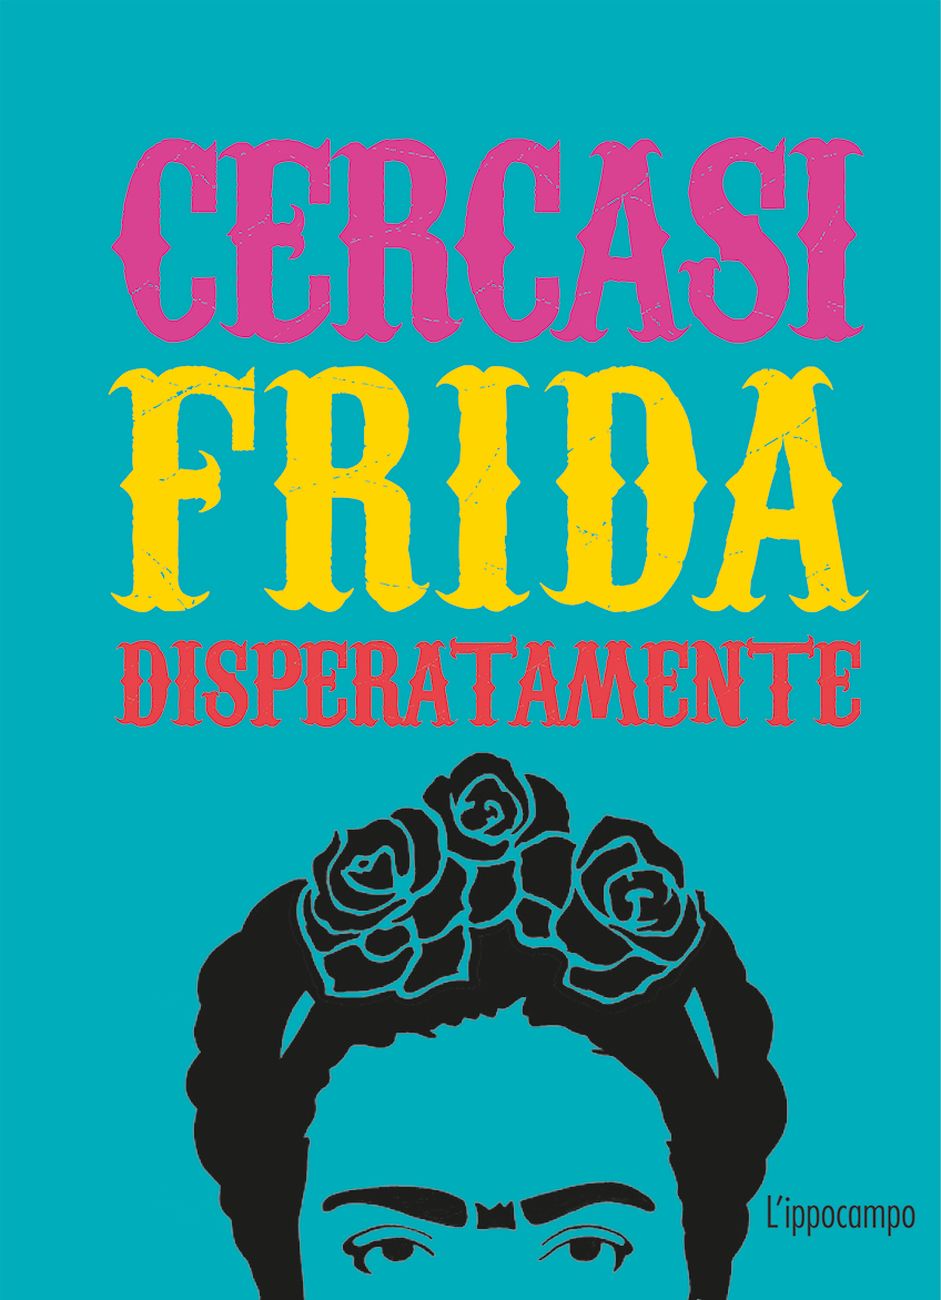 Ian Castello Cortes – Cercasi Frida disperatamente (L’ippocampo, Milano 2019)